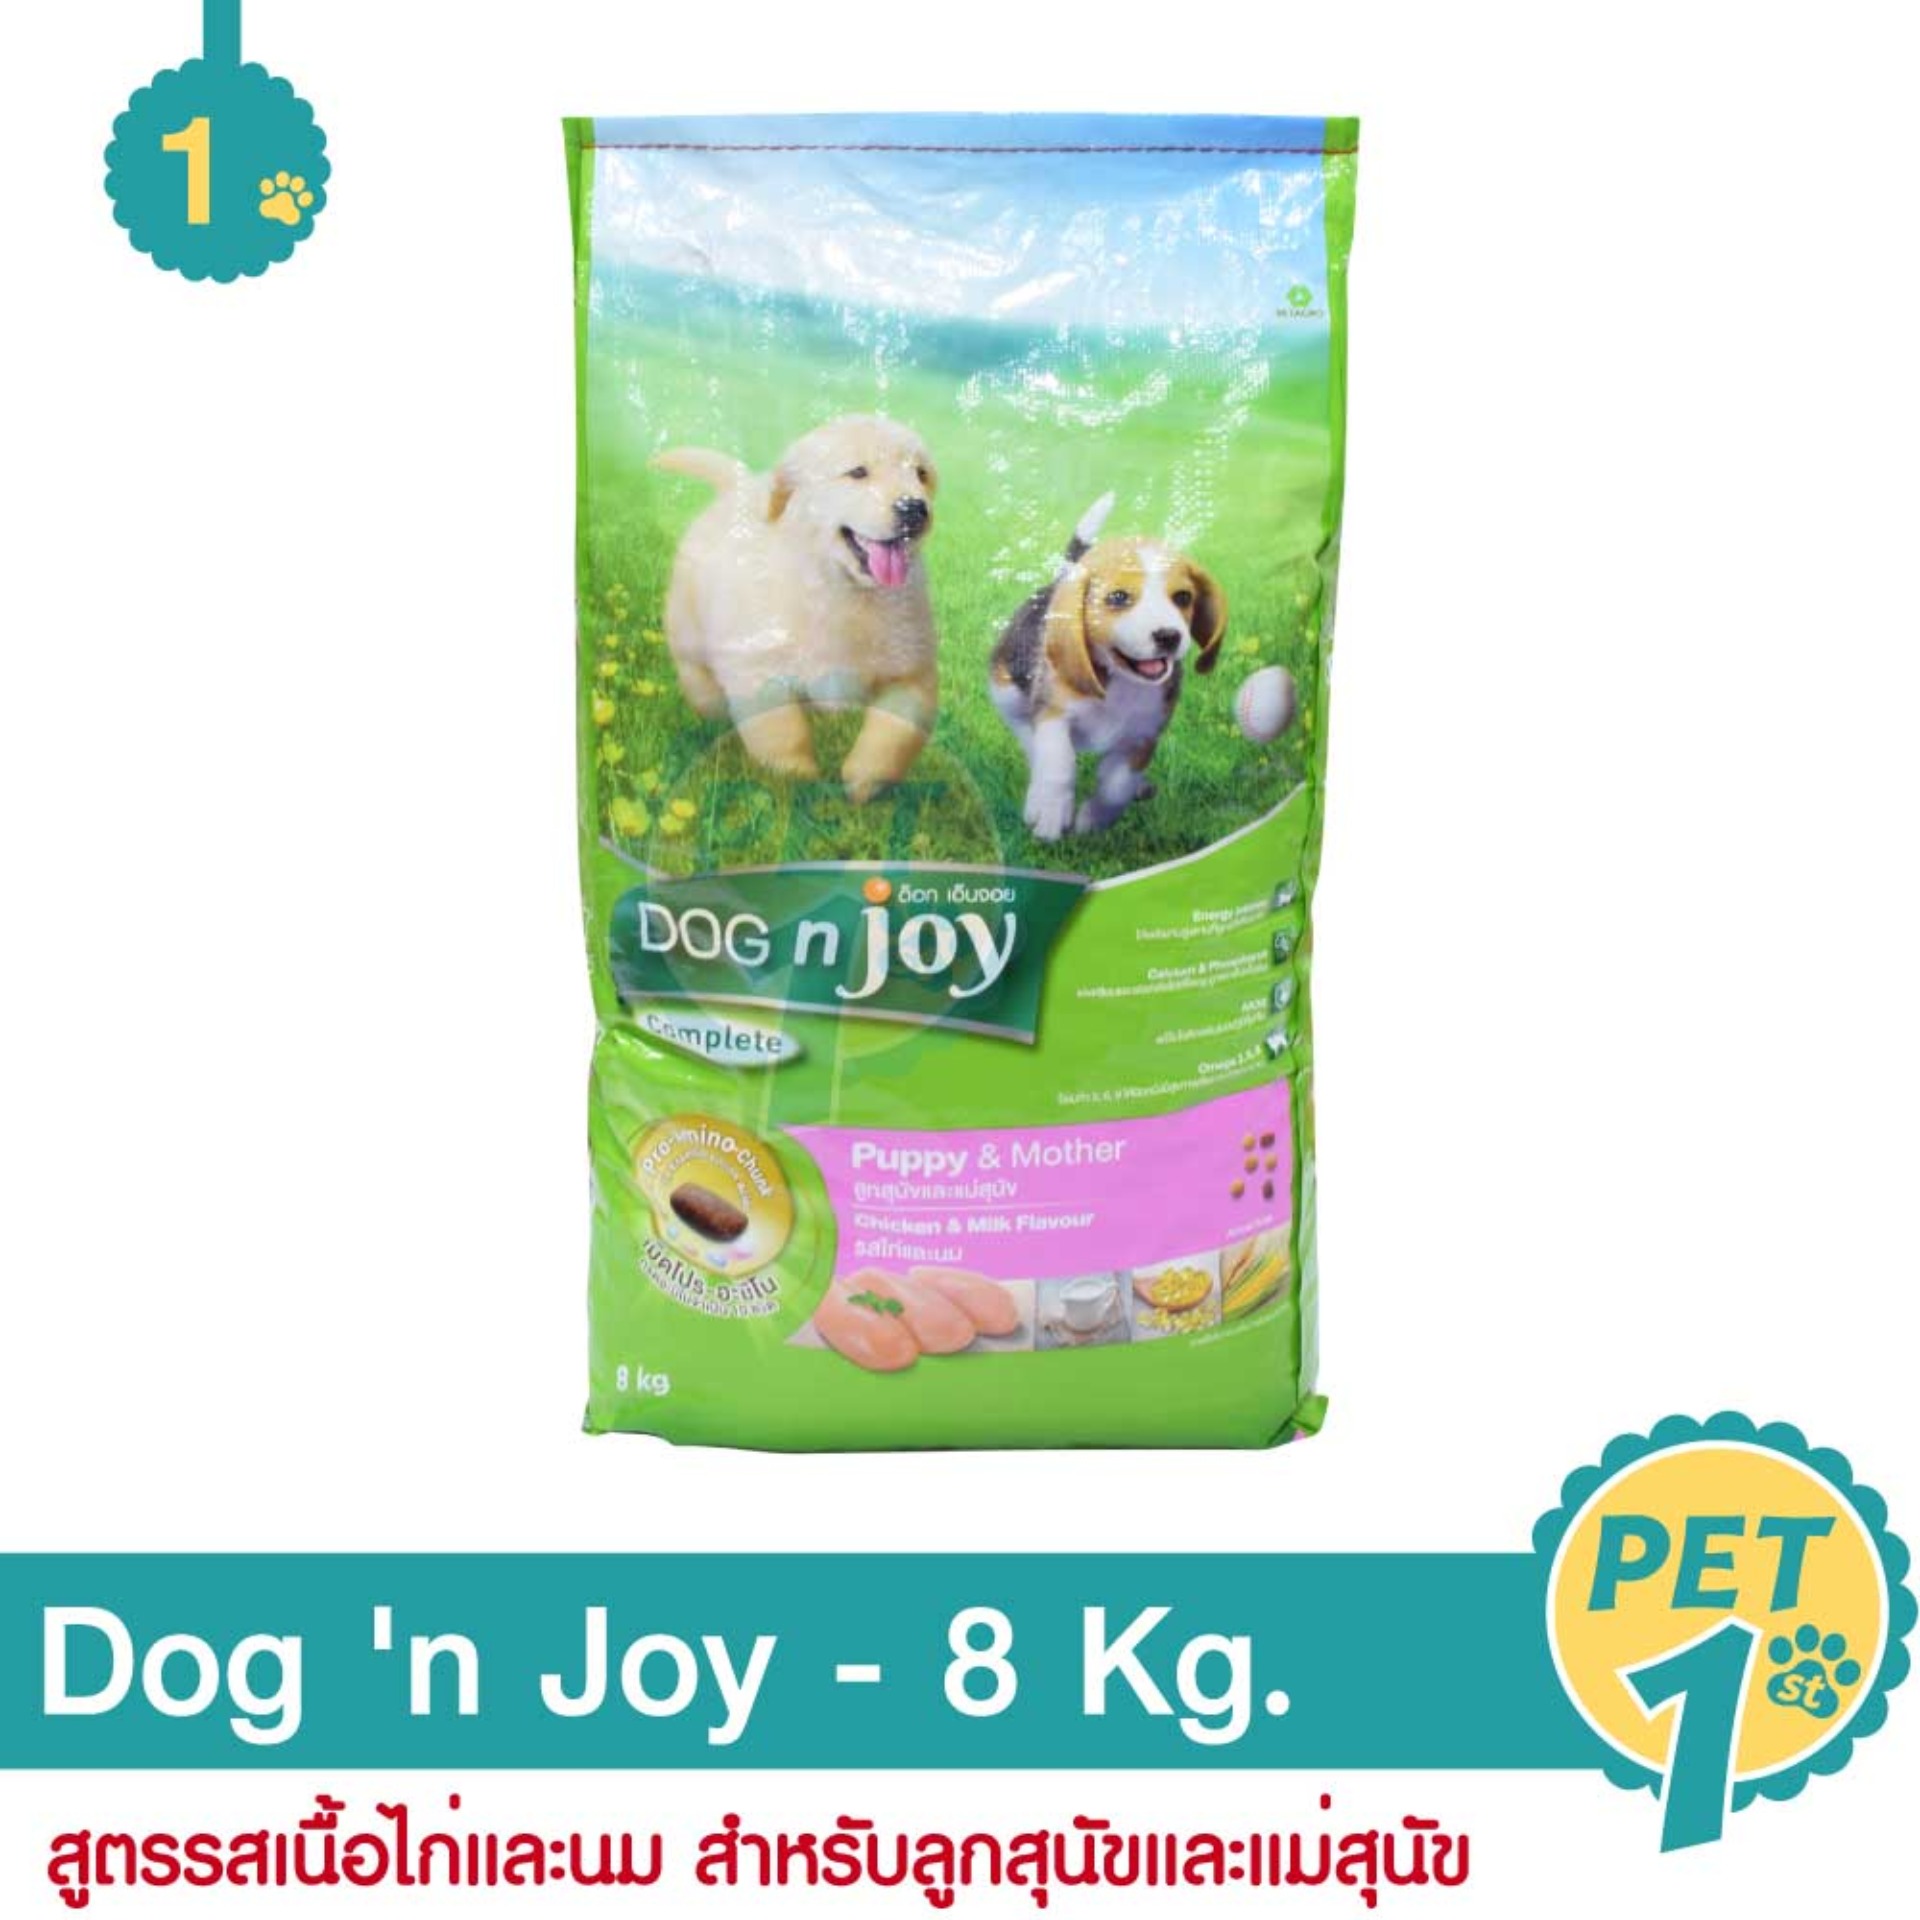 Dog 'n Joy Puppy & Mother 8 Kg. อาหารสุนัข สูตรเนื้อไก่และนม สำหรับลูกสุนัขและแม่สุนัข 8 กิโลกรัม